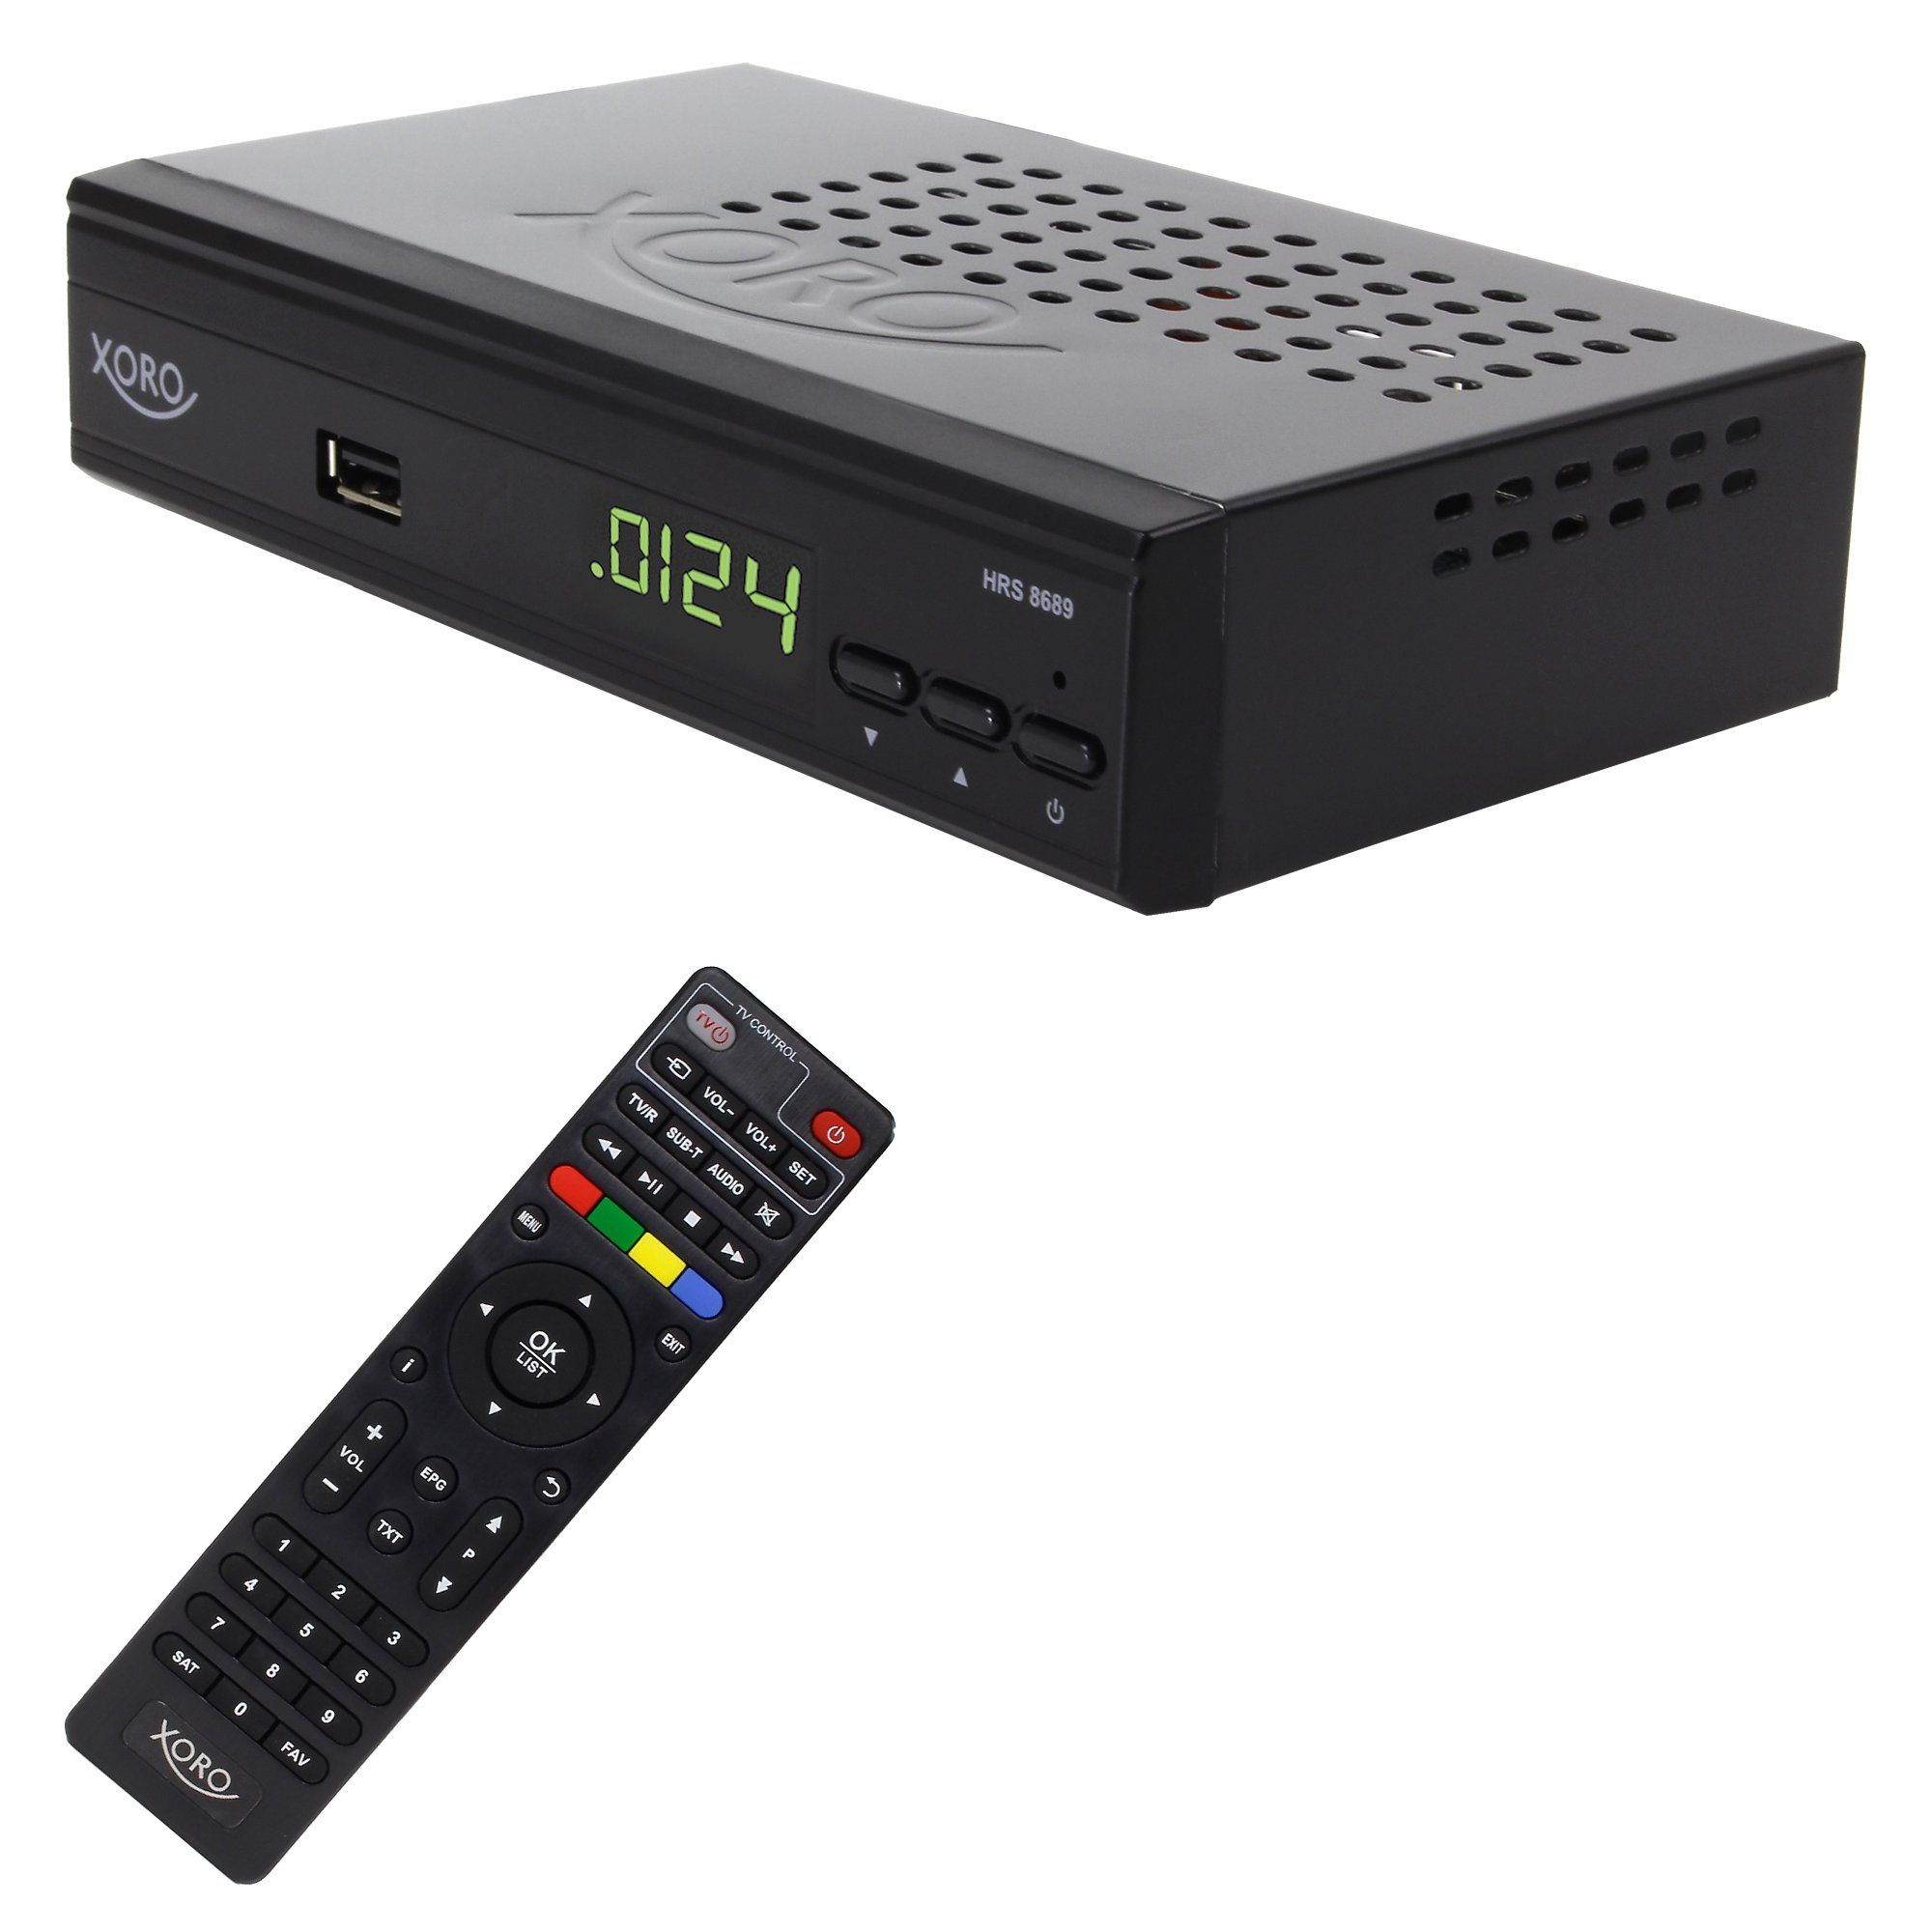 HD 19.2 HRS ASTRA Senderliste, mit Digitaler 8689 SAT-Receiver vorprogrammierter Xoro